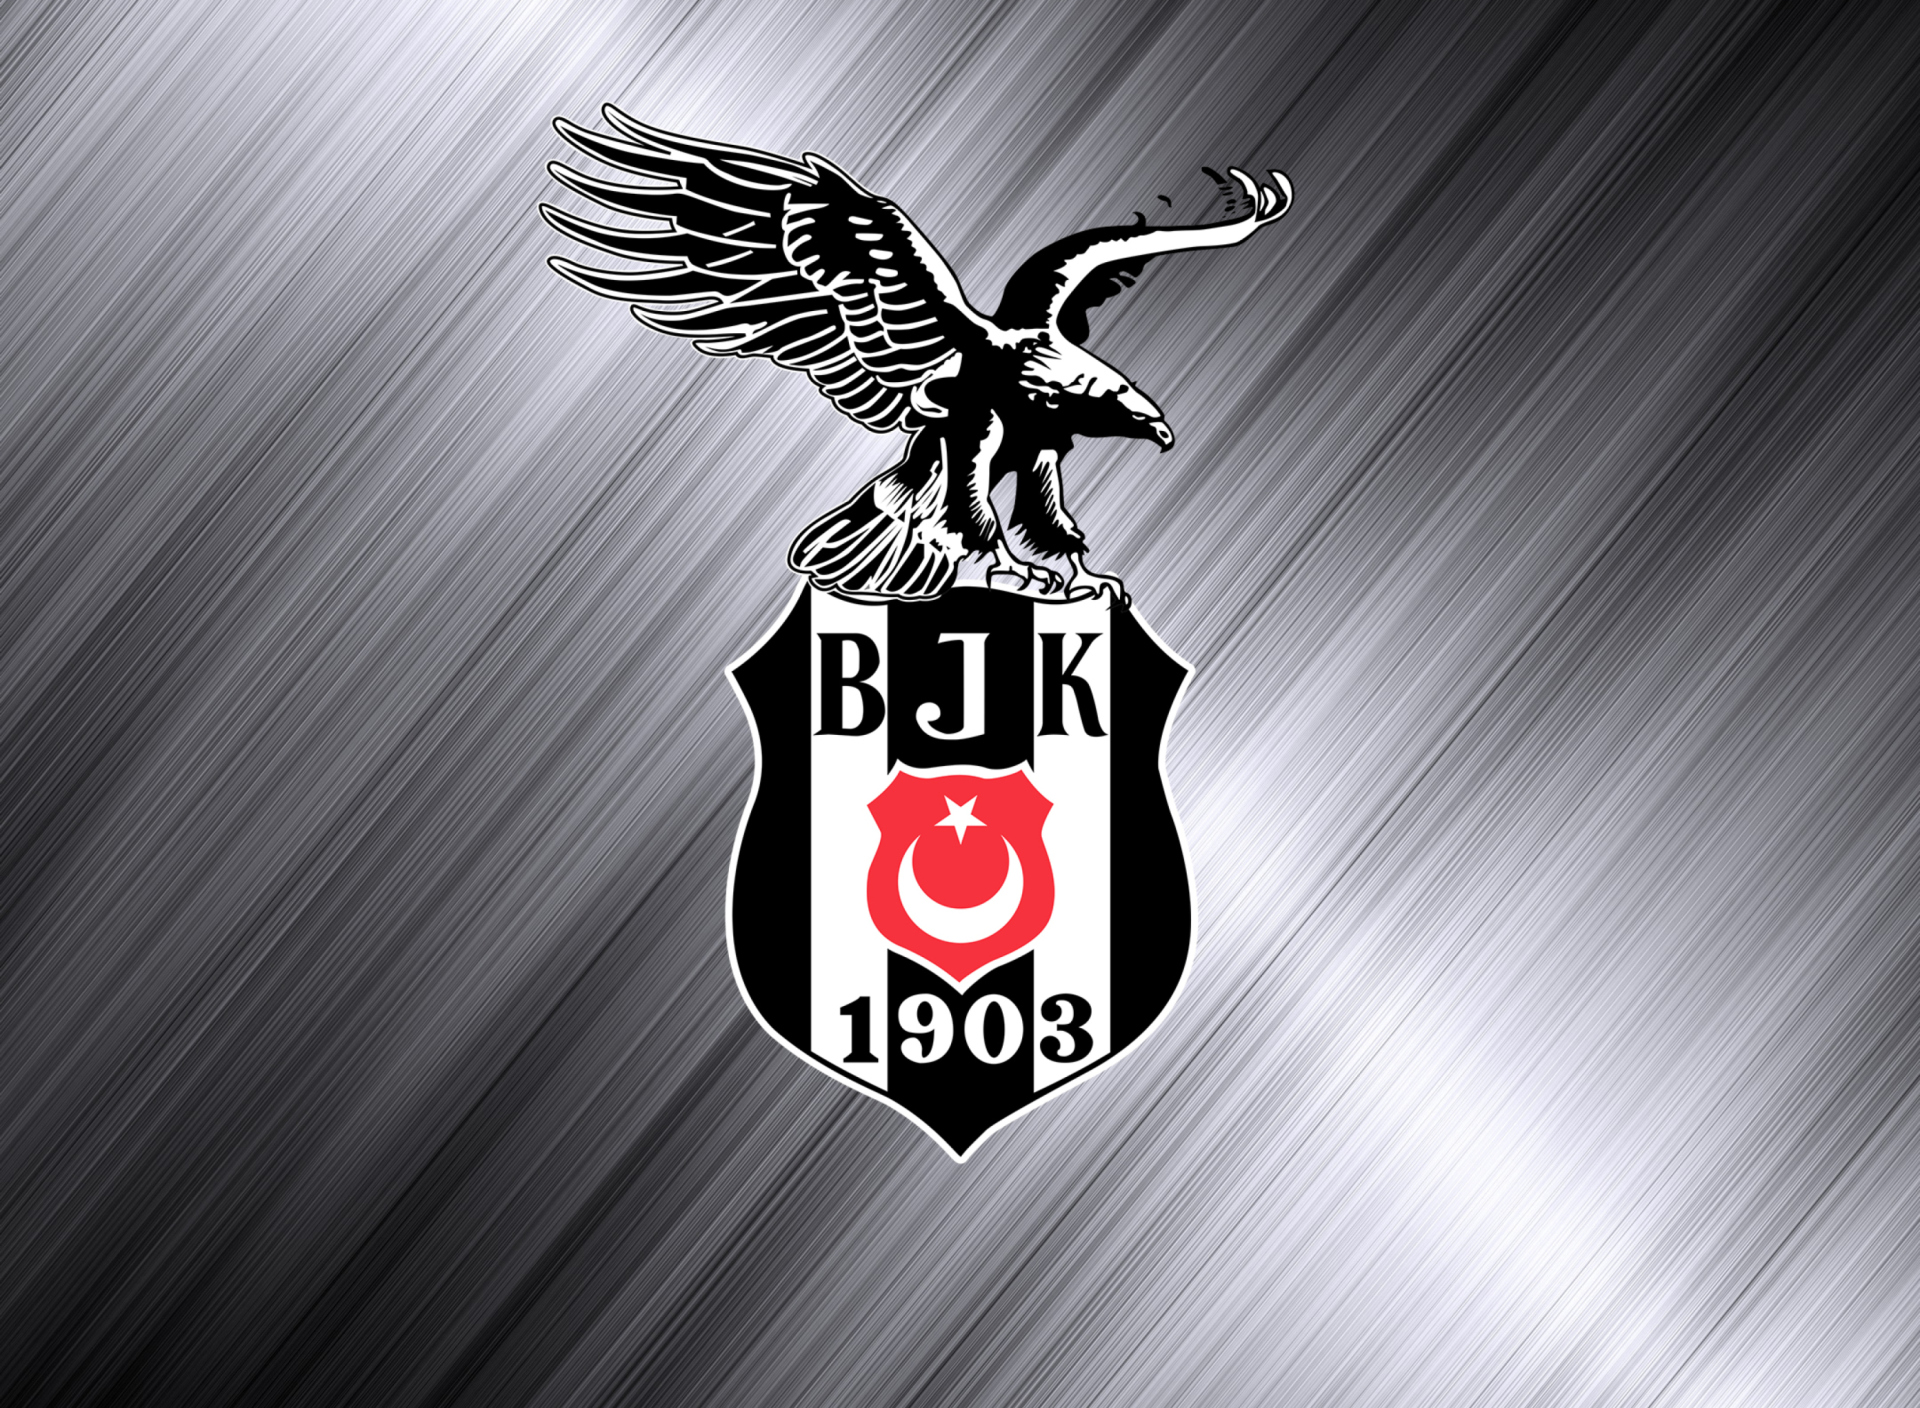 Besiktas - Beşiktaş J.K. wallpaper 1920x1408